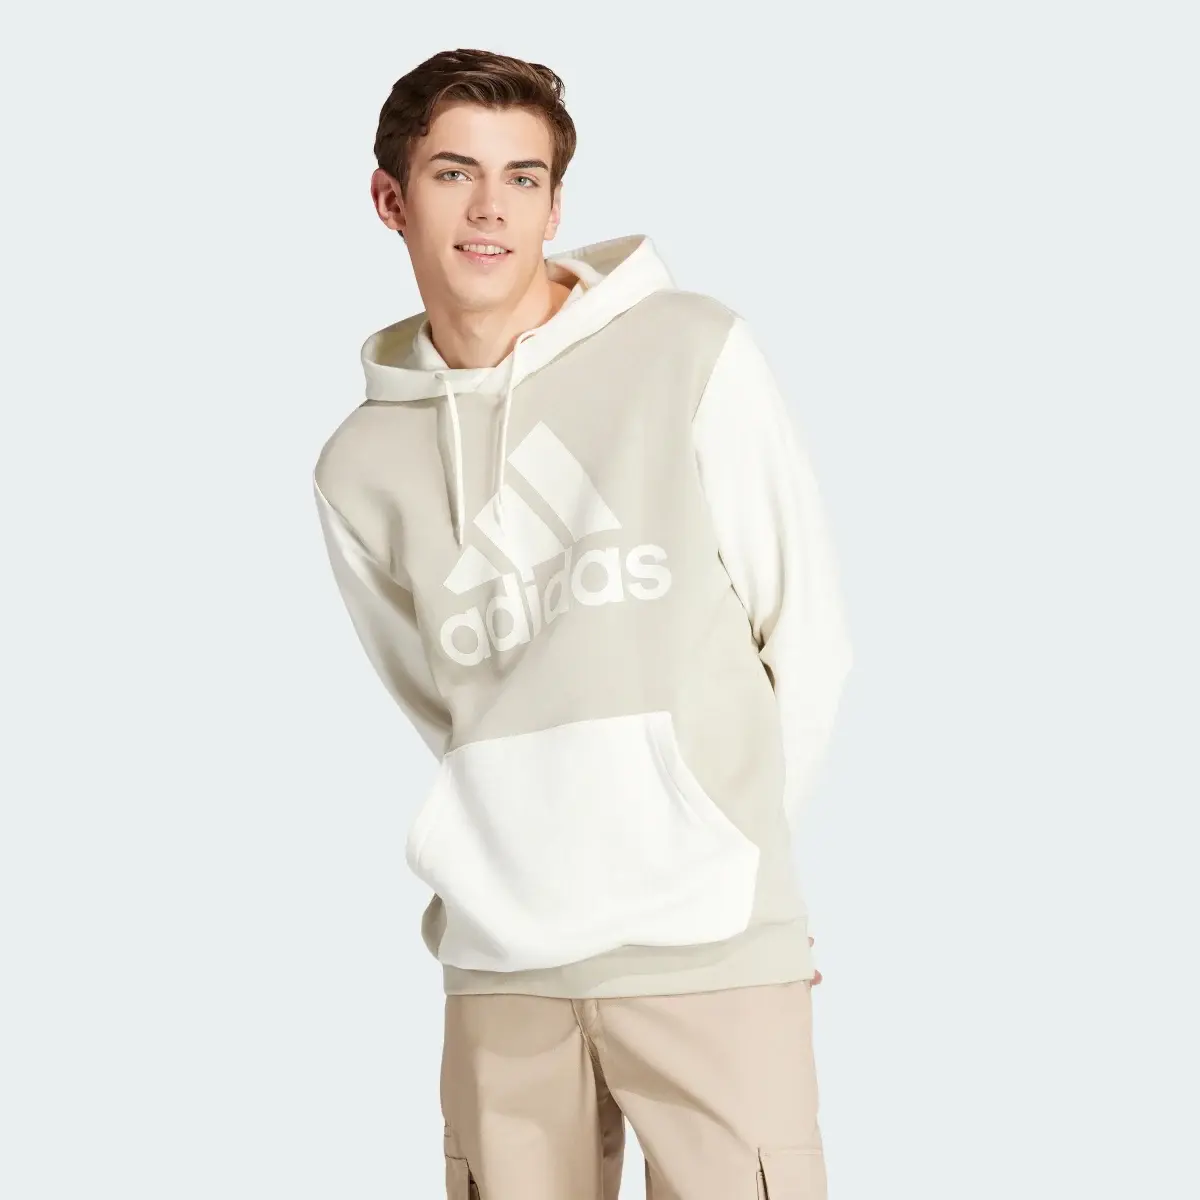 Adidas Camisola com Capuz em Fleece Essentials. 2